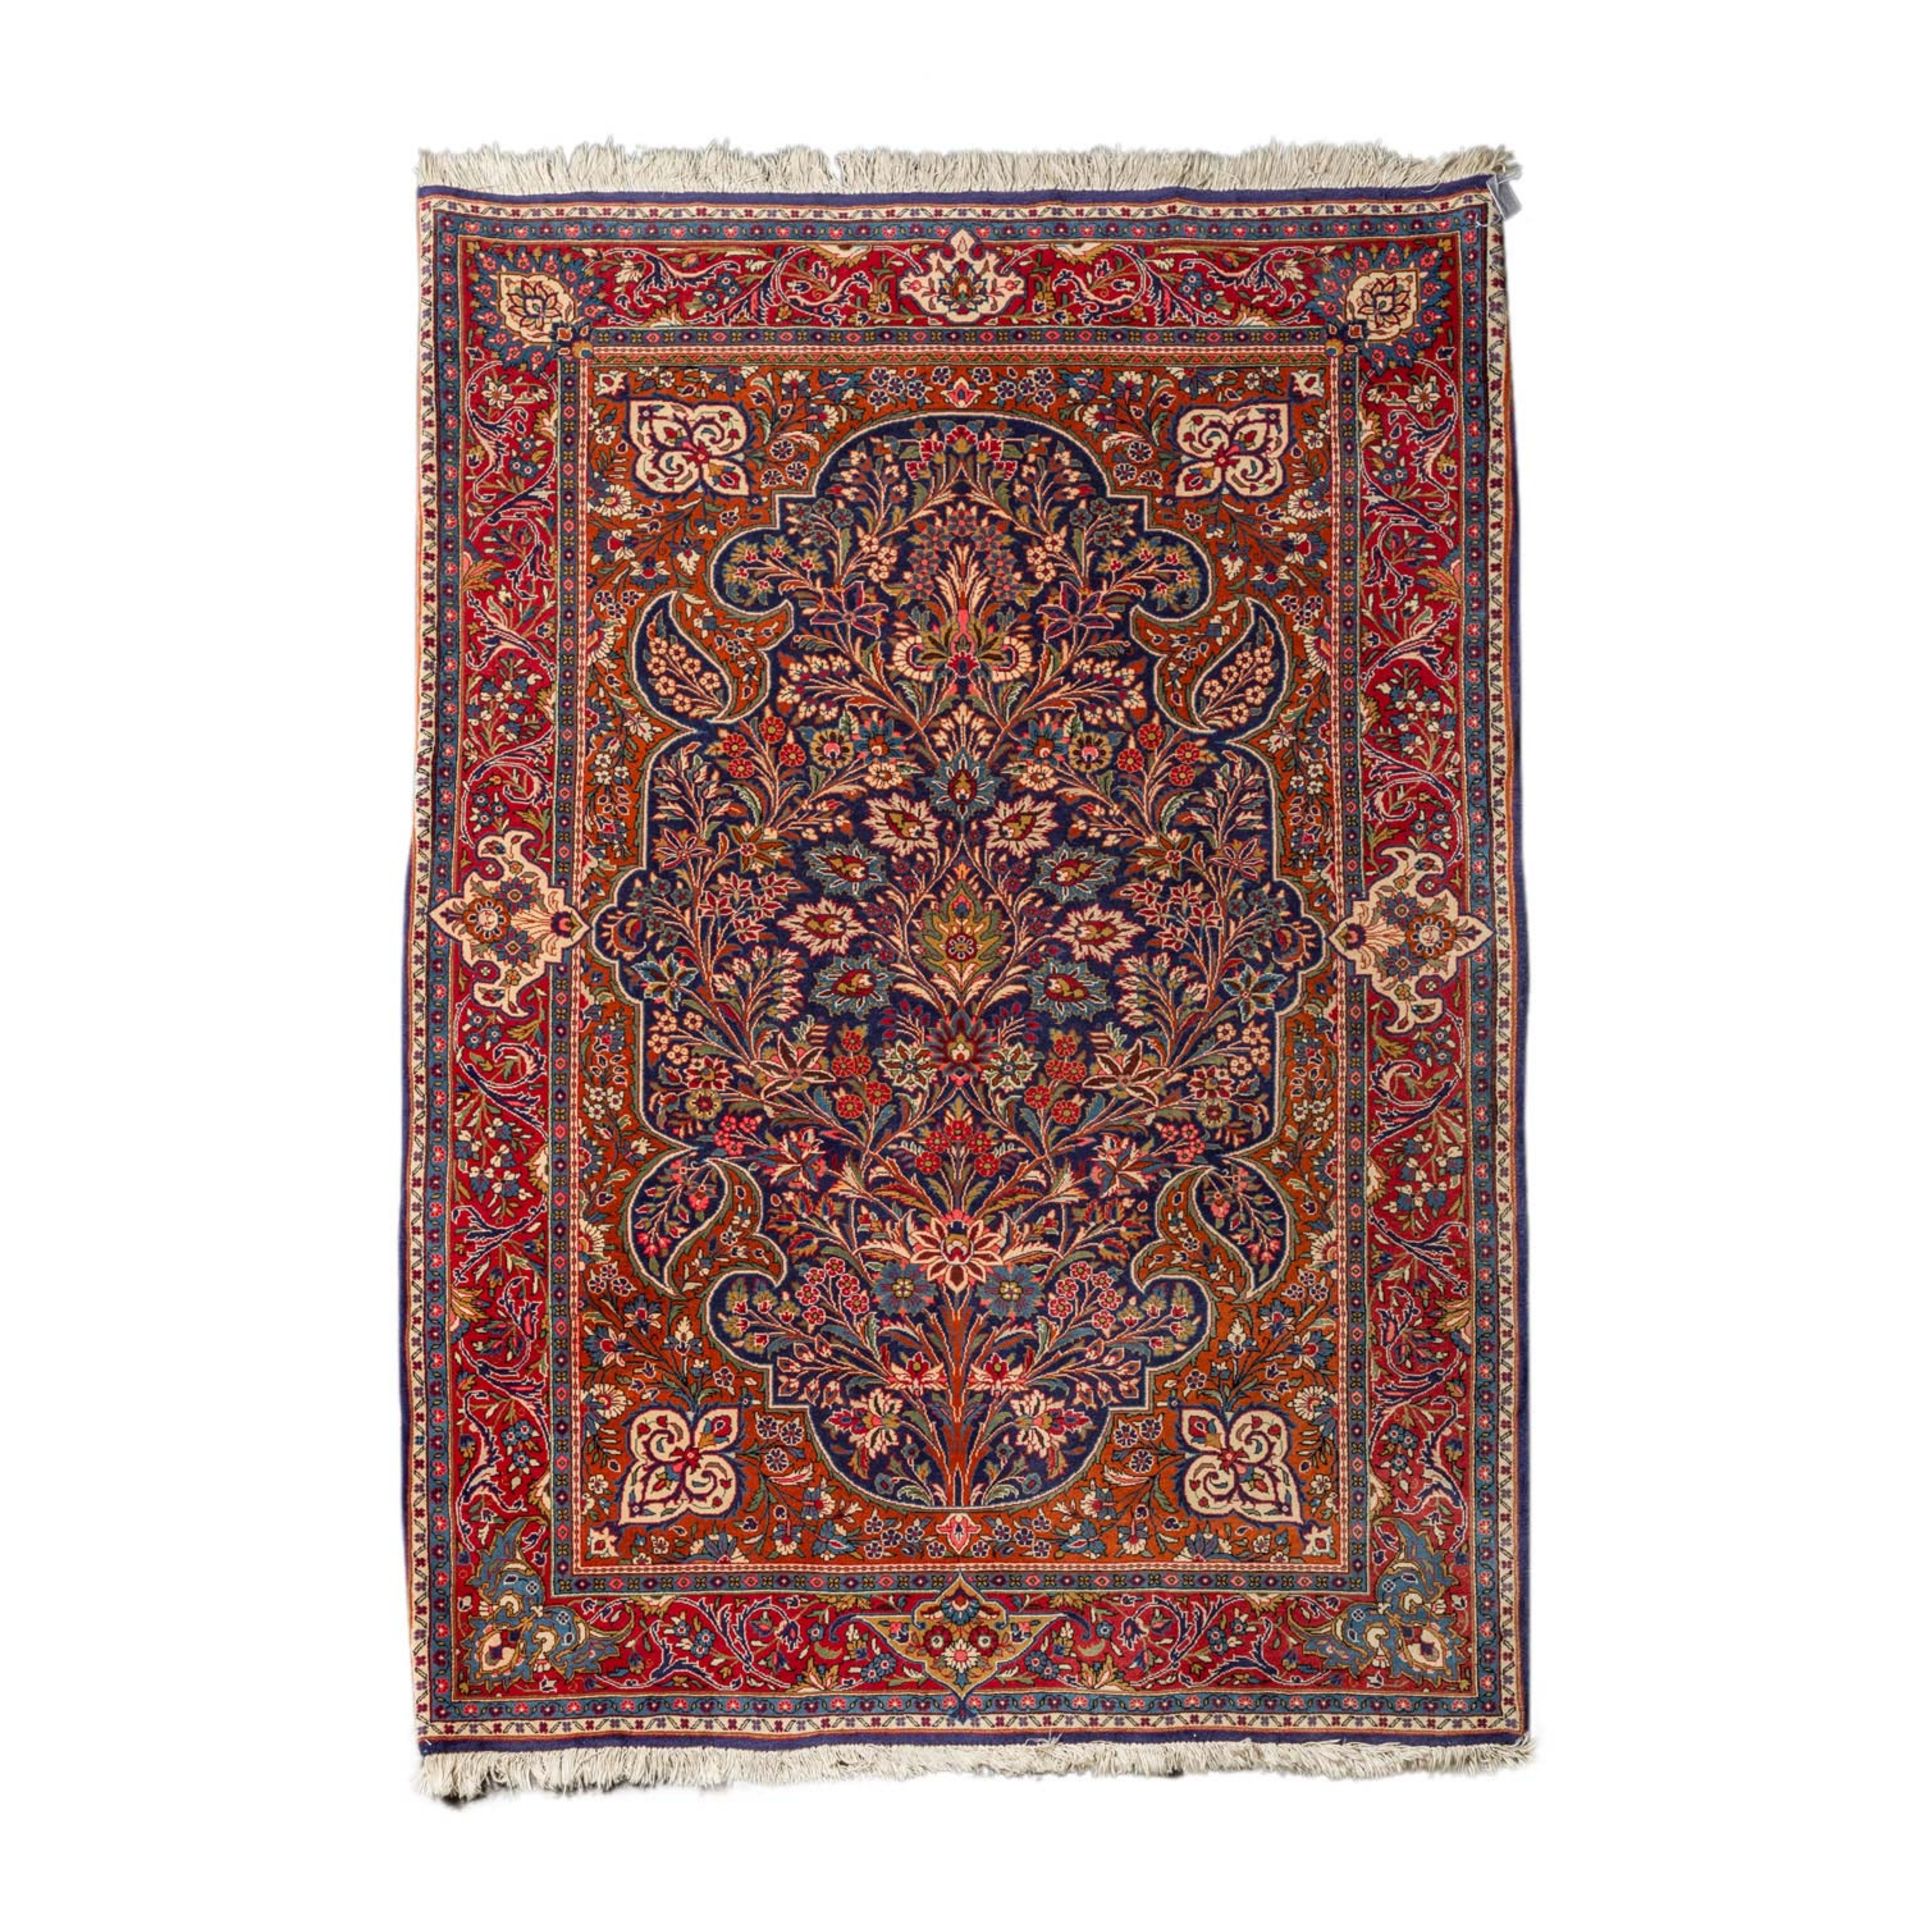 Orientteppich. KESHAN/IRAN, 20. Jh., ca. 195x135 cm.Der rostrote Fond des Innenfeldes ist